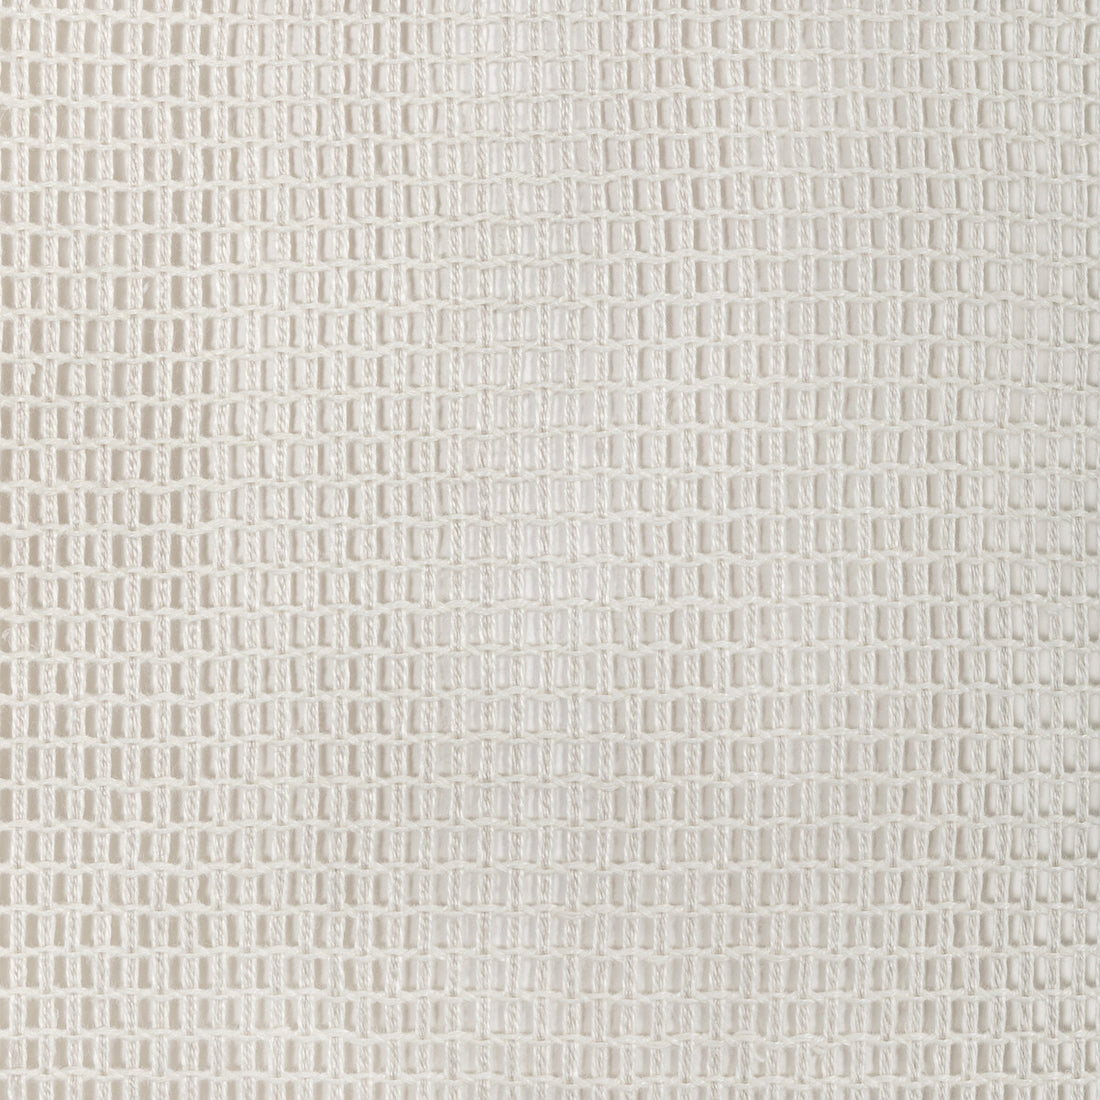 Kravet Design fabric in 4636-1101 color - pattern 4636.1101.0 - by Kravet Design